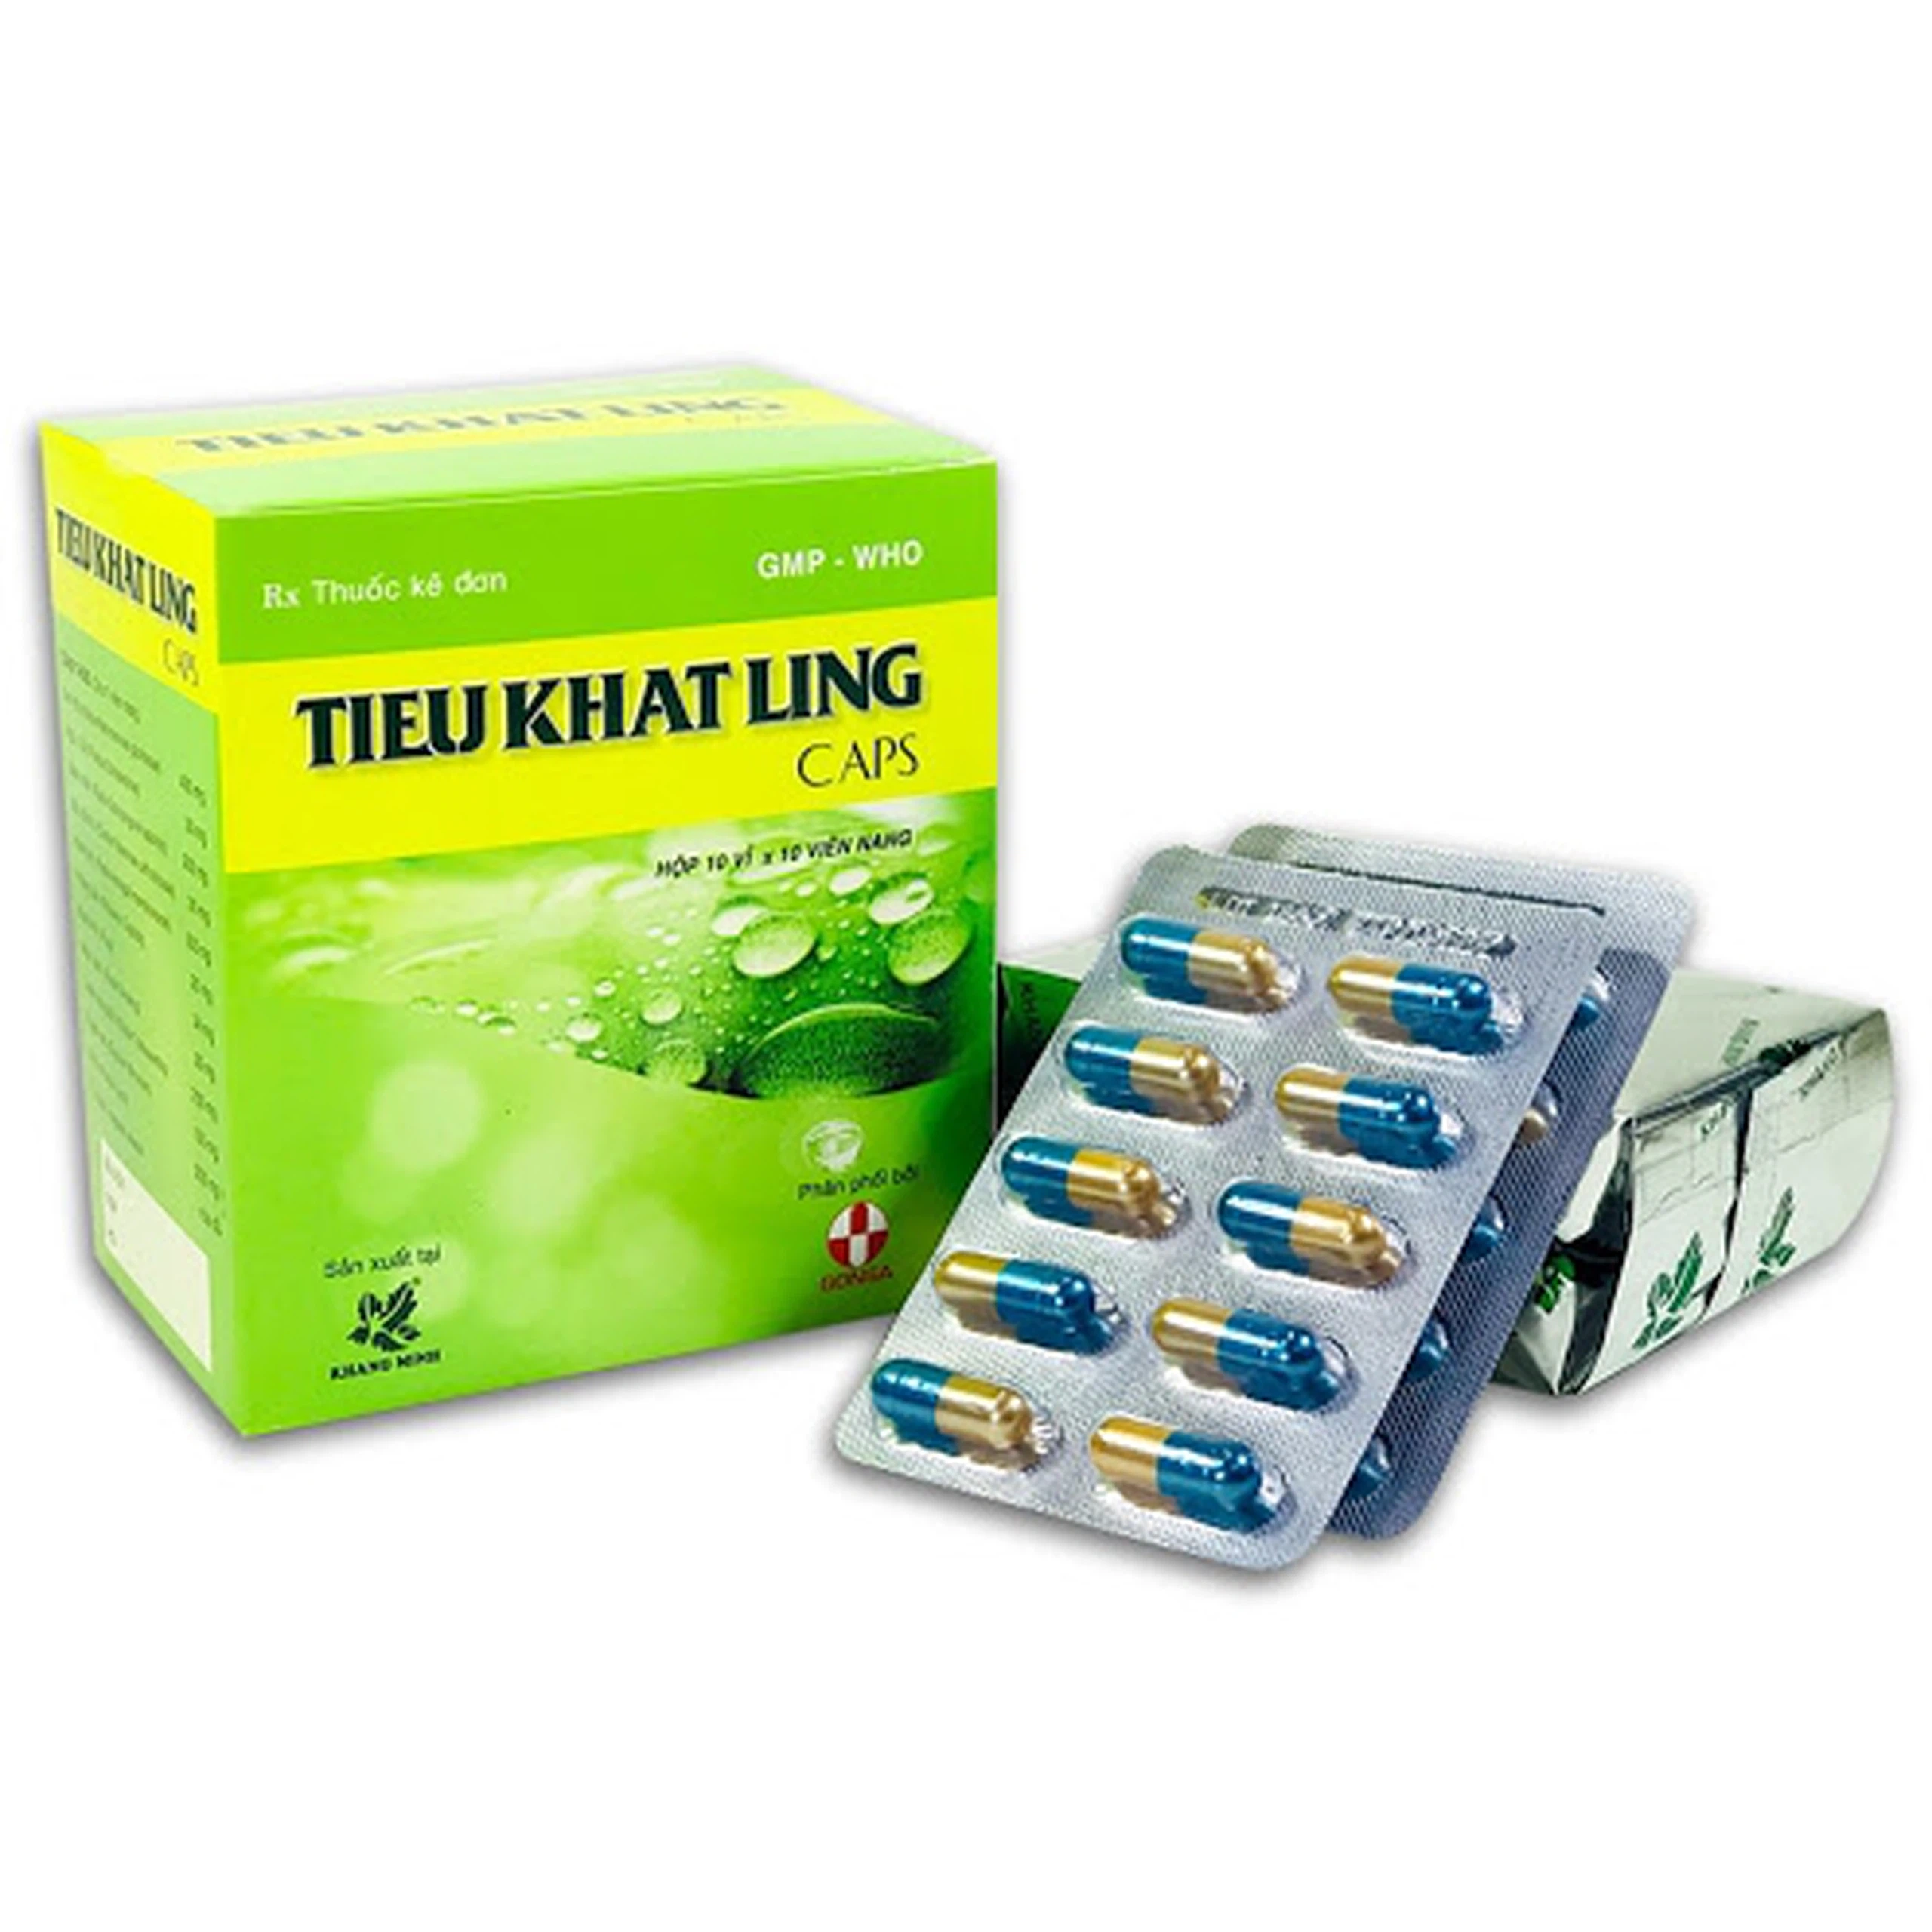 Thuốc Tieu Khat Ling điều trị tiêu khát do khí và âm hư (10 vỉ x 10 viên)